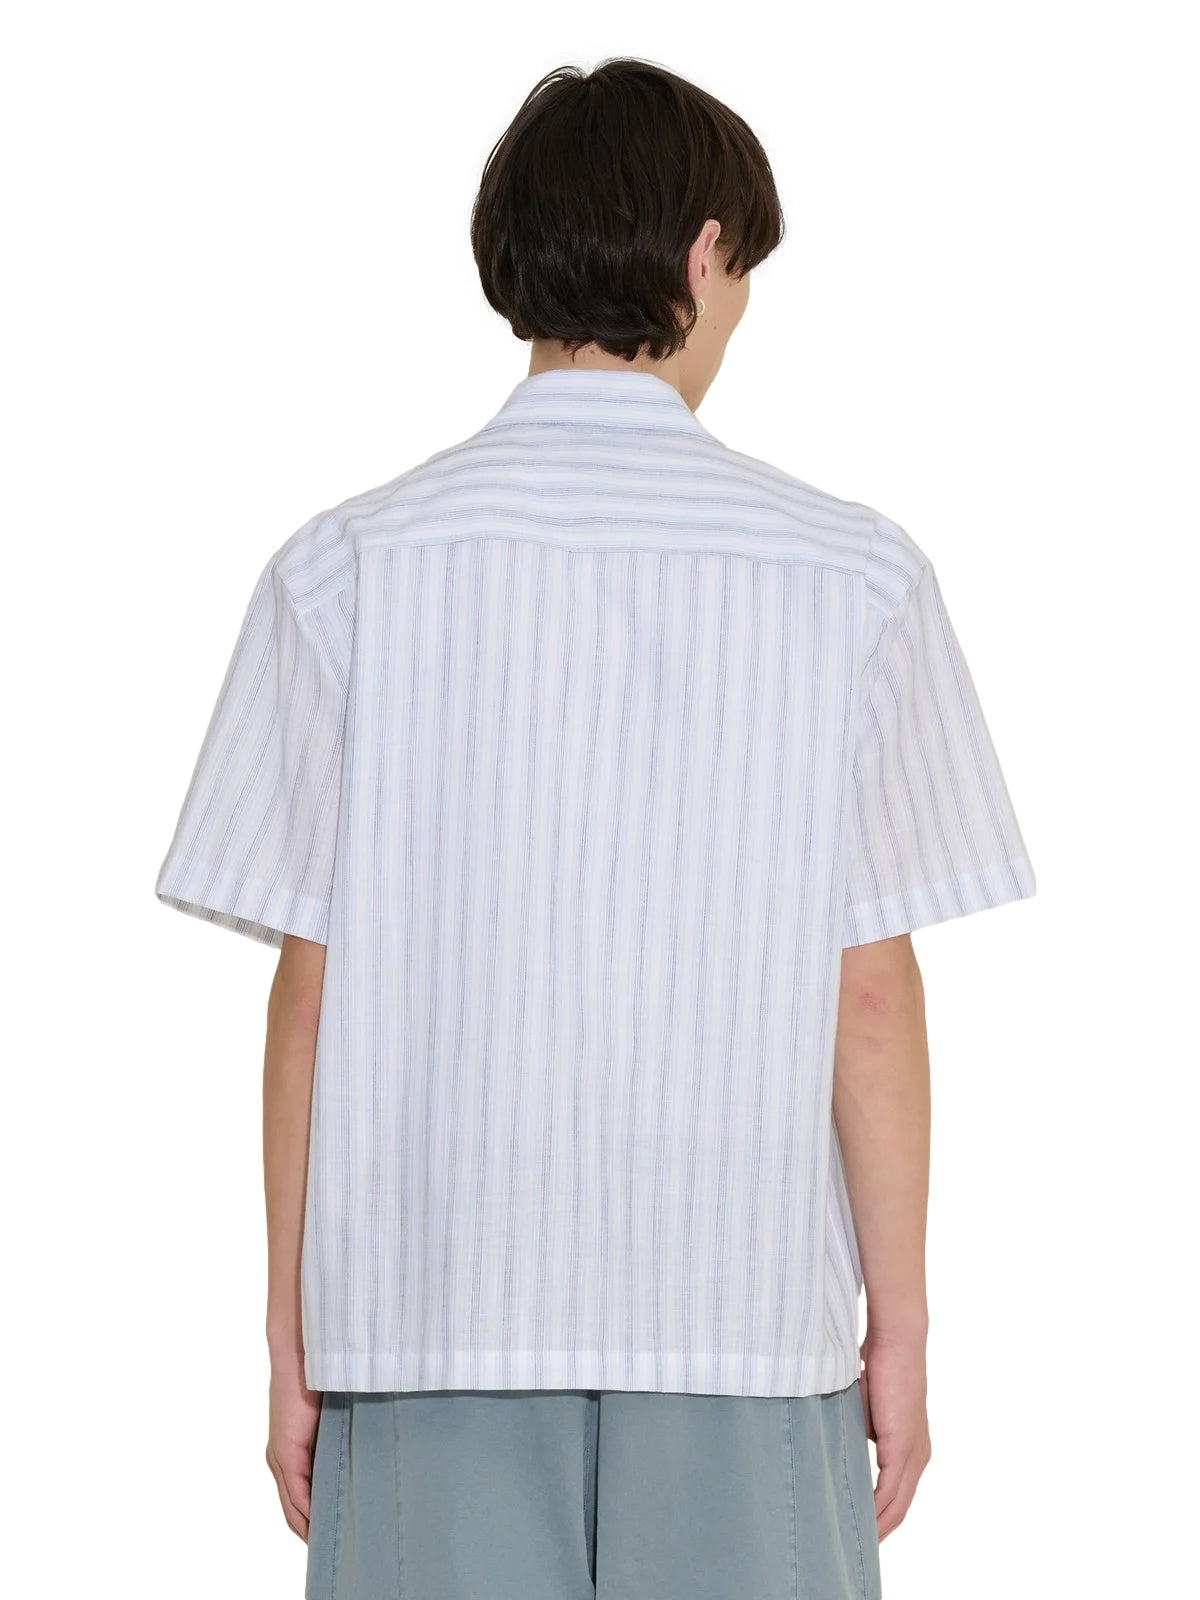 Holzweiler Pier Stripe Shirt Skjorte Blå Mønster - [shop.name]